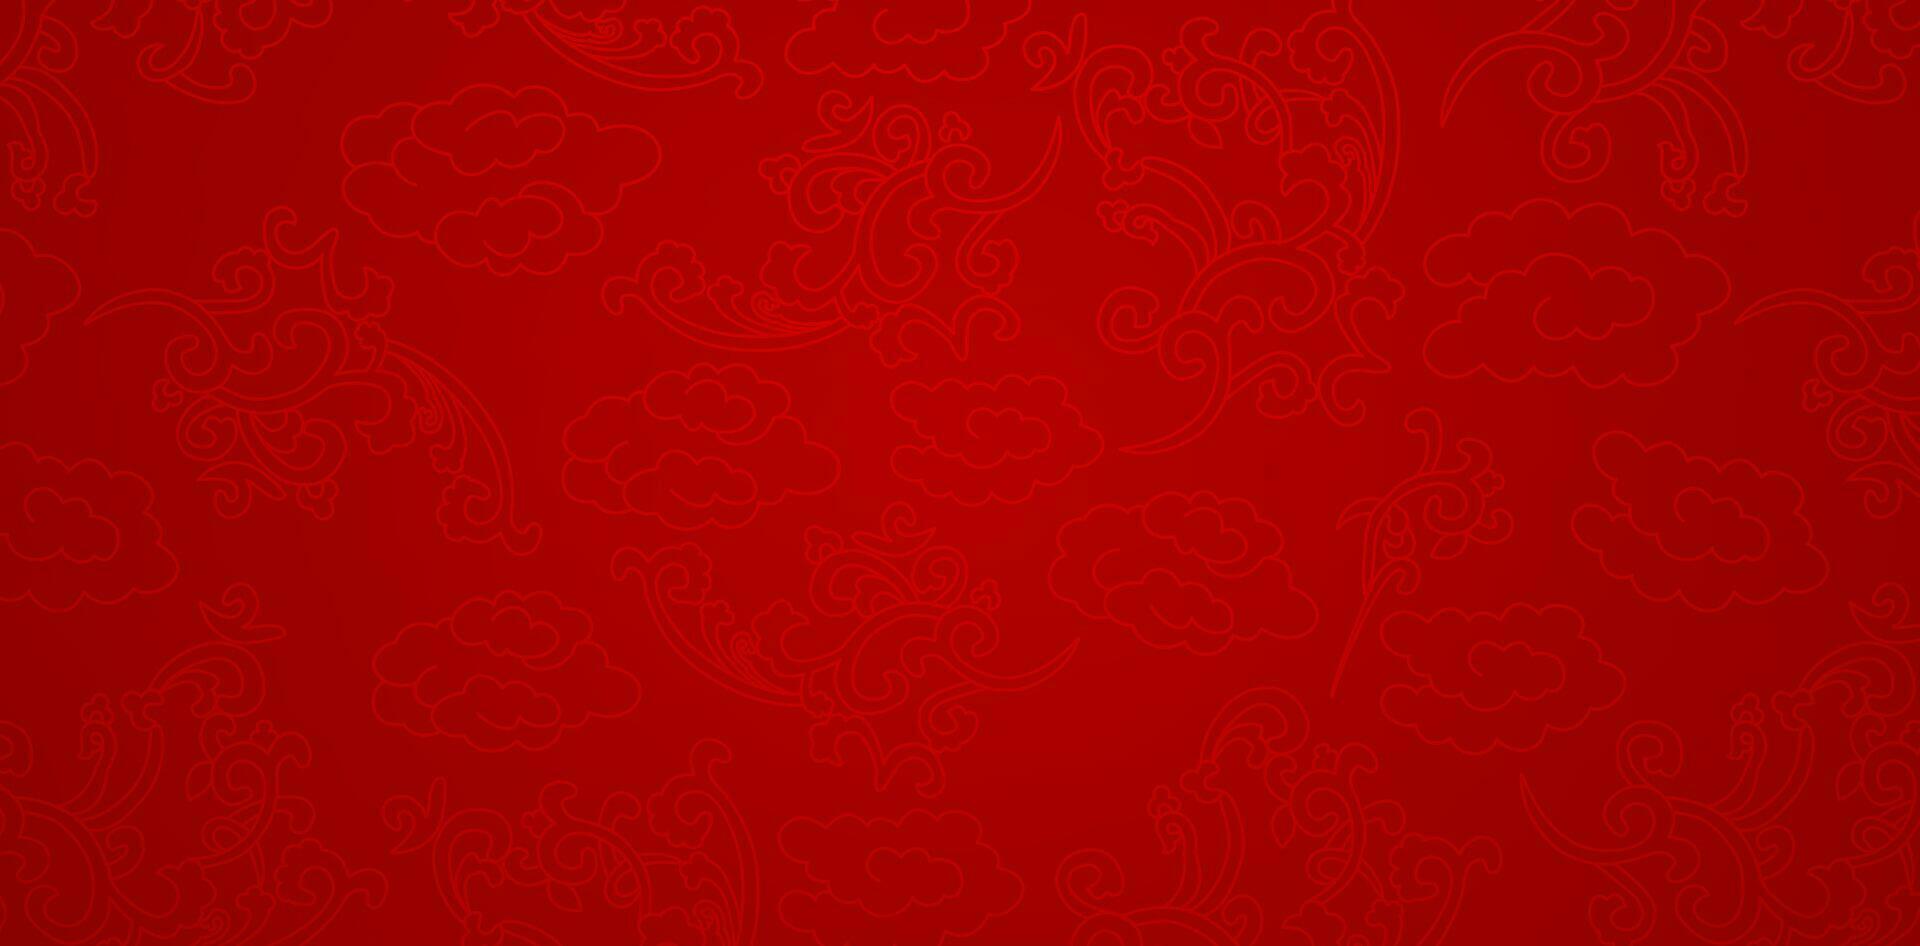 chino adornos sin costura modelo con rojo antecedentes para presentaciones marketing, cubiertas, anuncios, libros cubiertas, digital interfaces, impresión diseño plantillas material, Boda invitación tarjetas, publicidad vector